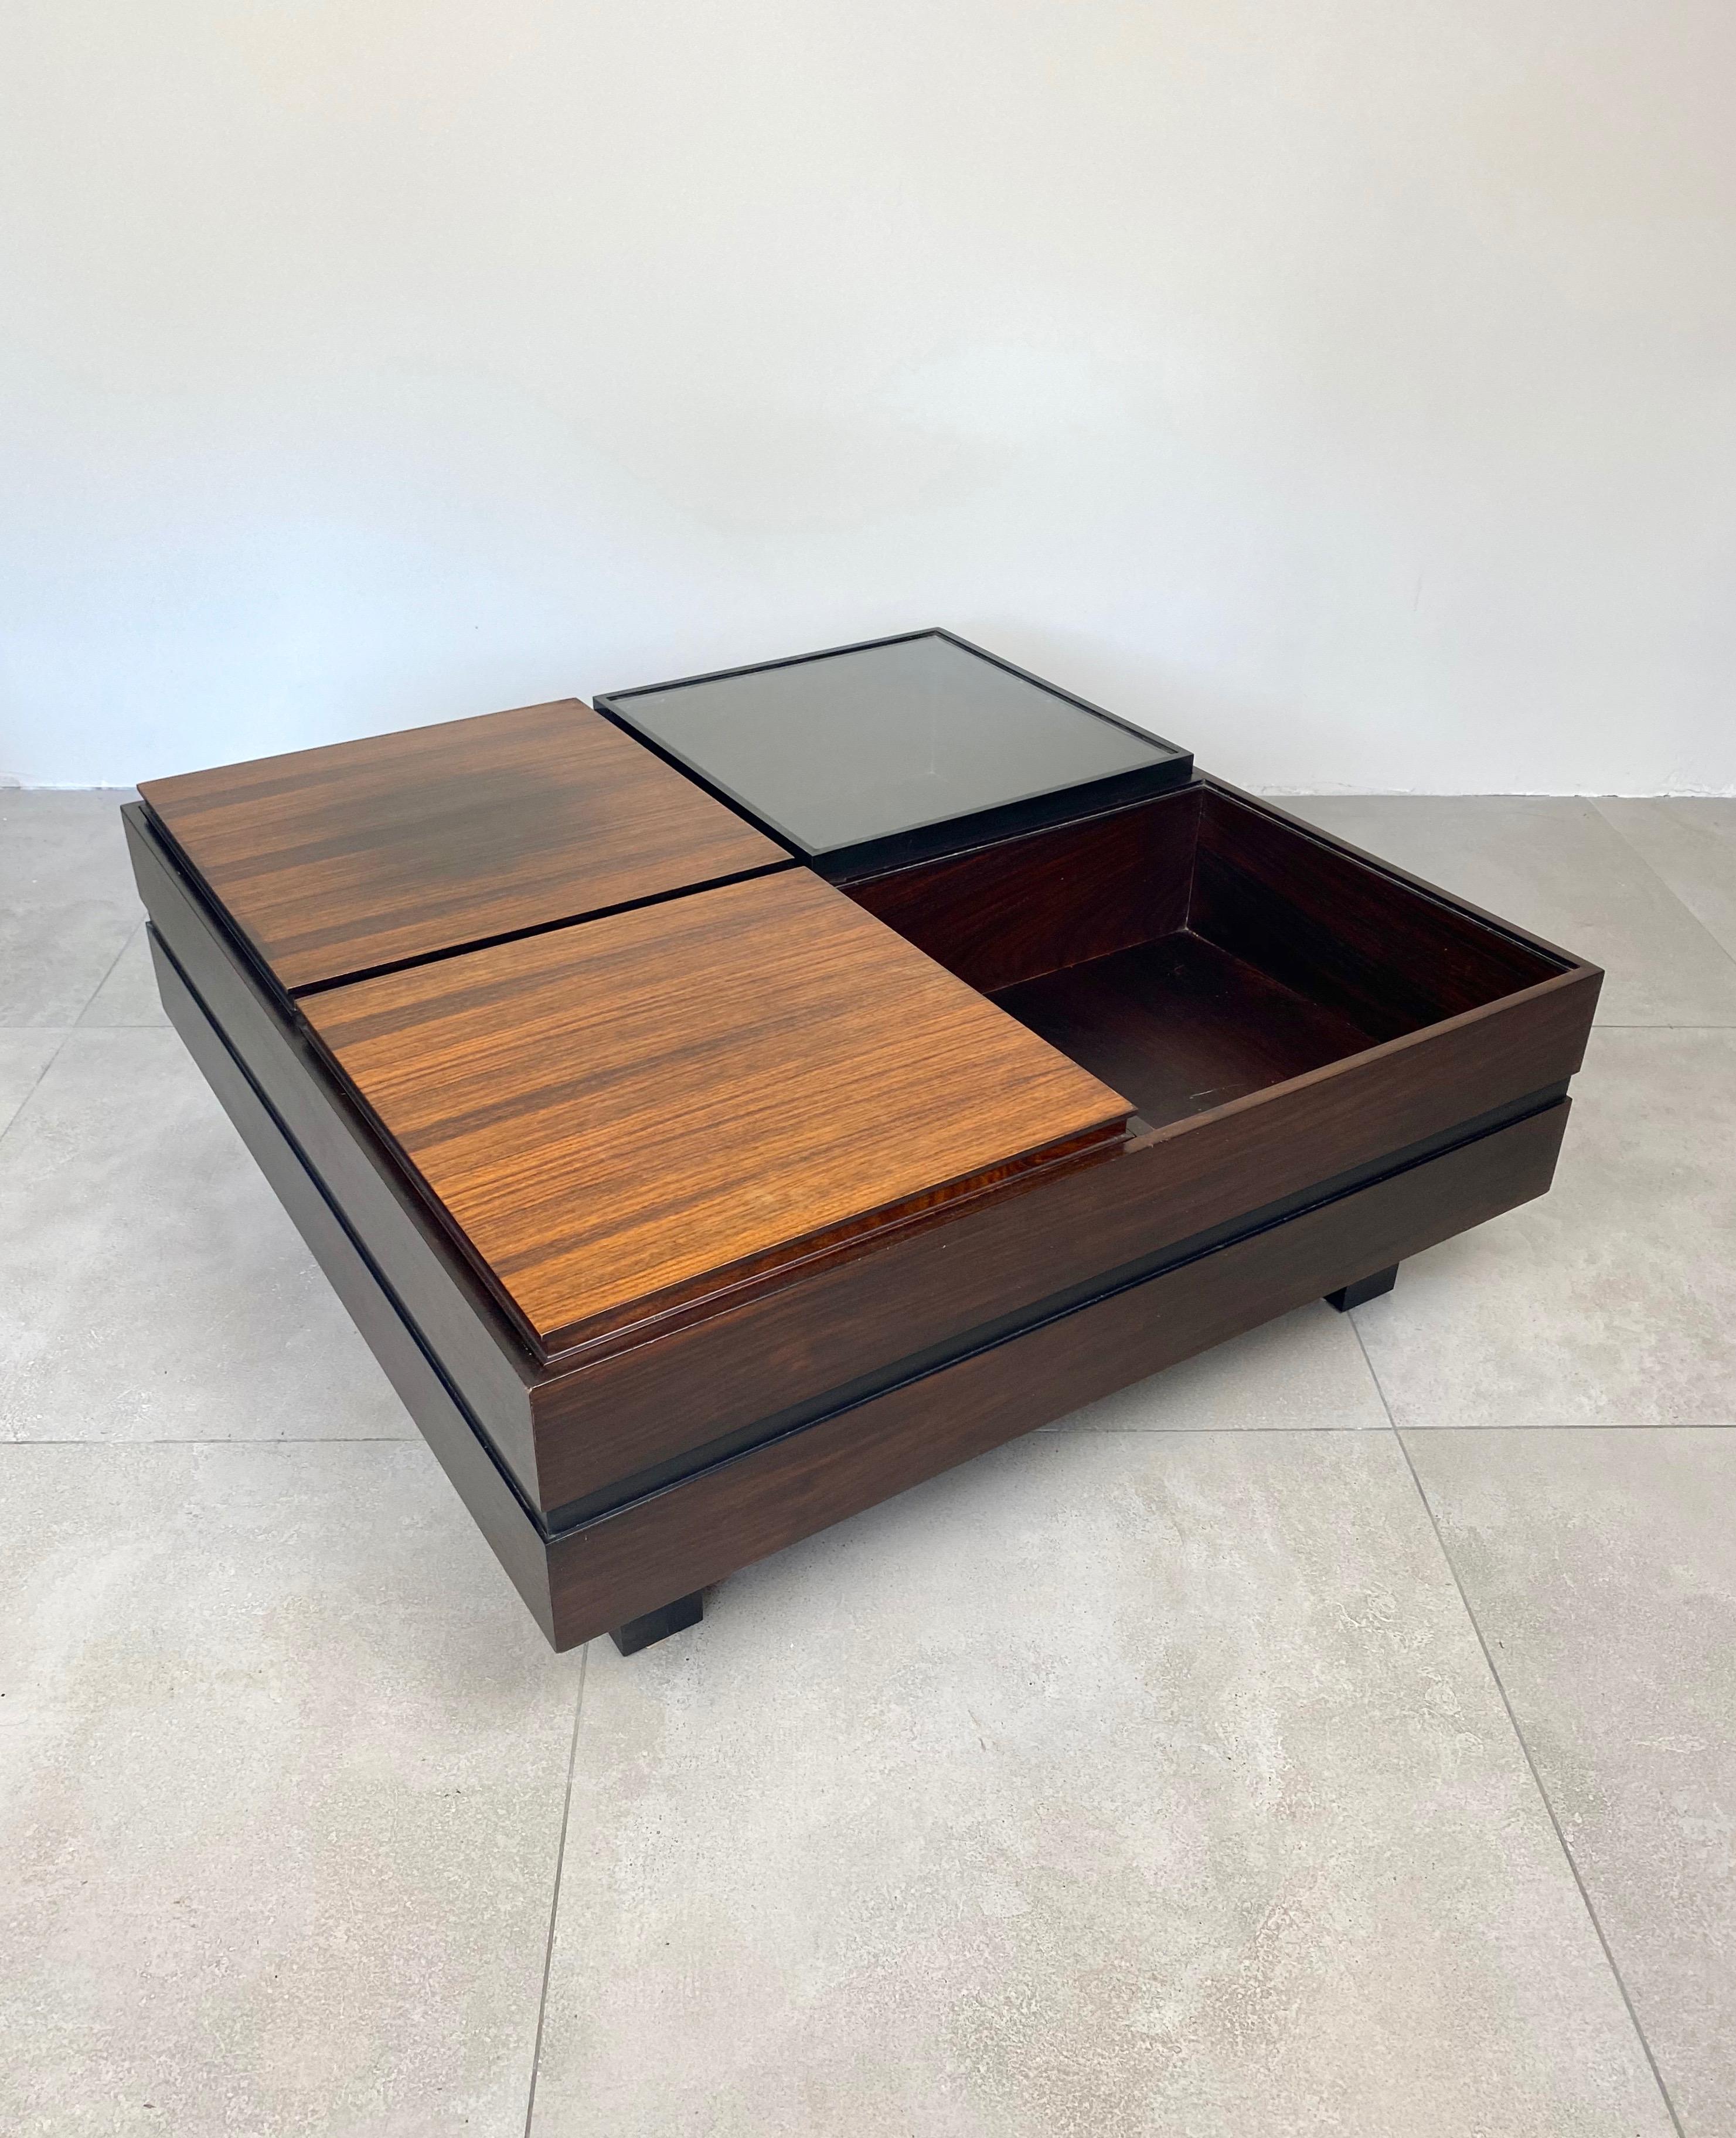 Cette table basse modulaire produite par Luigi Sormani dans les années 1960 est divisée en quatre compartiments ; l'un vide, un autre un plateau amovible, le dernier un couvercle en verre. Les côtés sont divisés horizontalement en deux par une bande